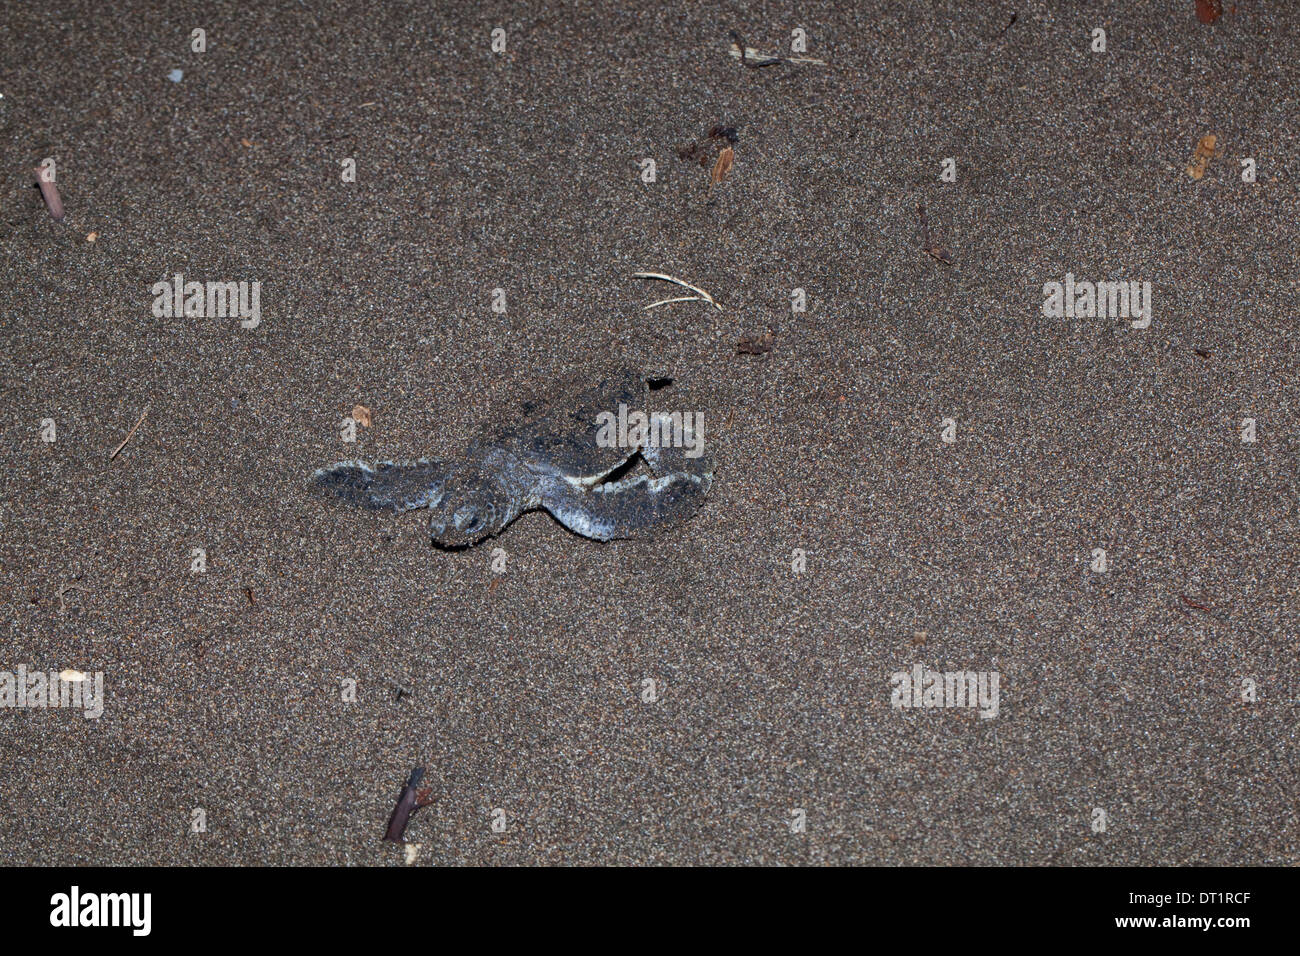 La tortue verte (Chelonia mydas). Au départ de la cavité de nidification des tortues dans une plage de sable volcanique. Tortuguero. Costa Rica. Banque D'Images